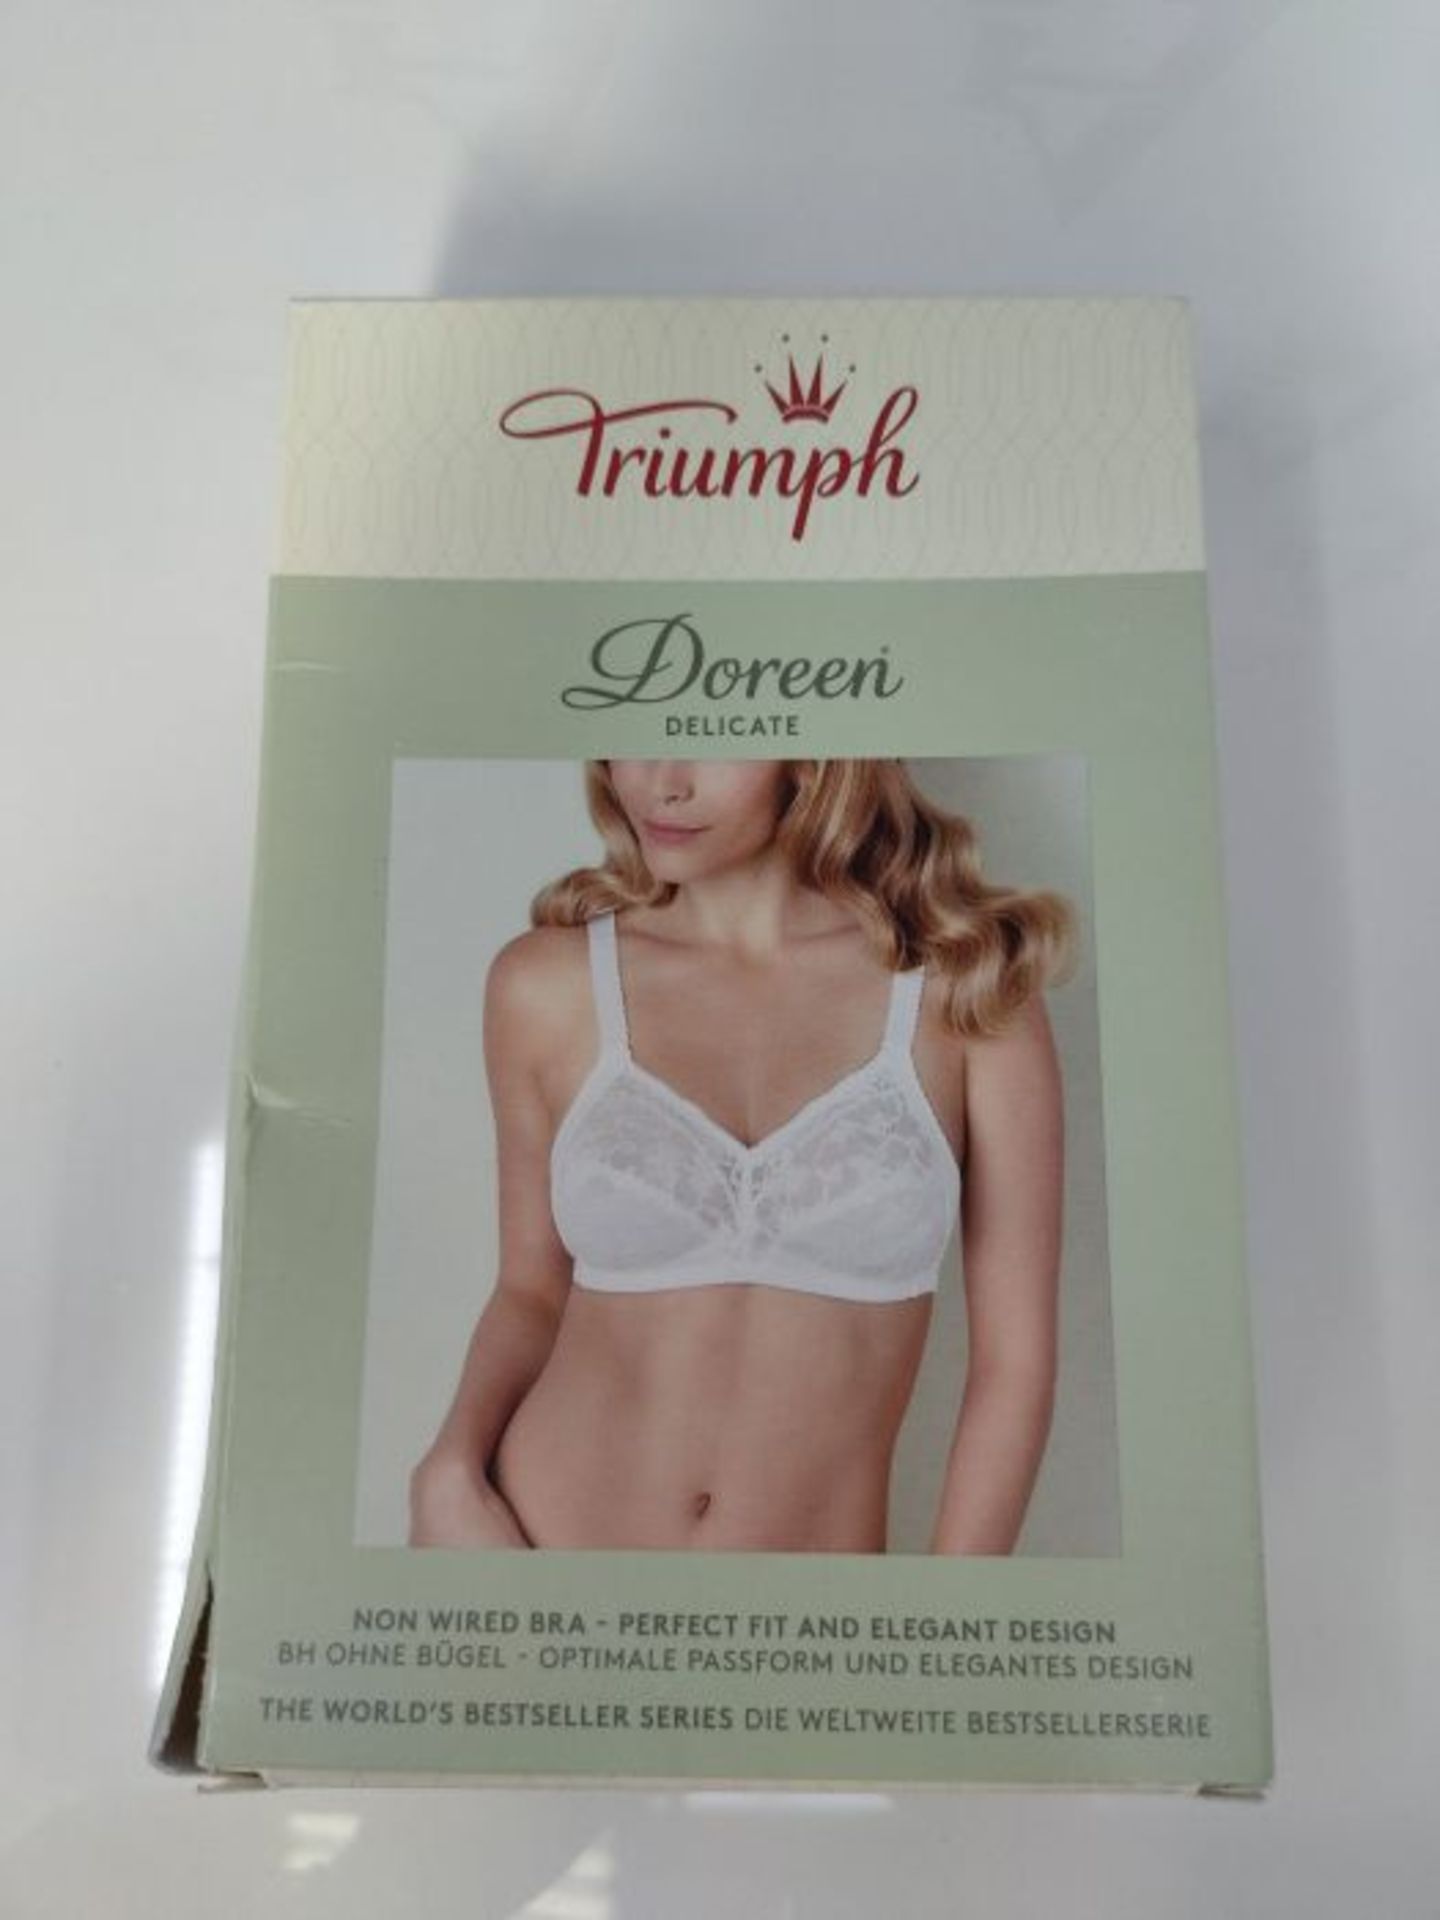 Triumph Women's Delicate Doreen N Non-Wired Bra, White, 40D - Image 2 of 3